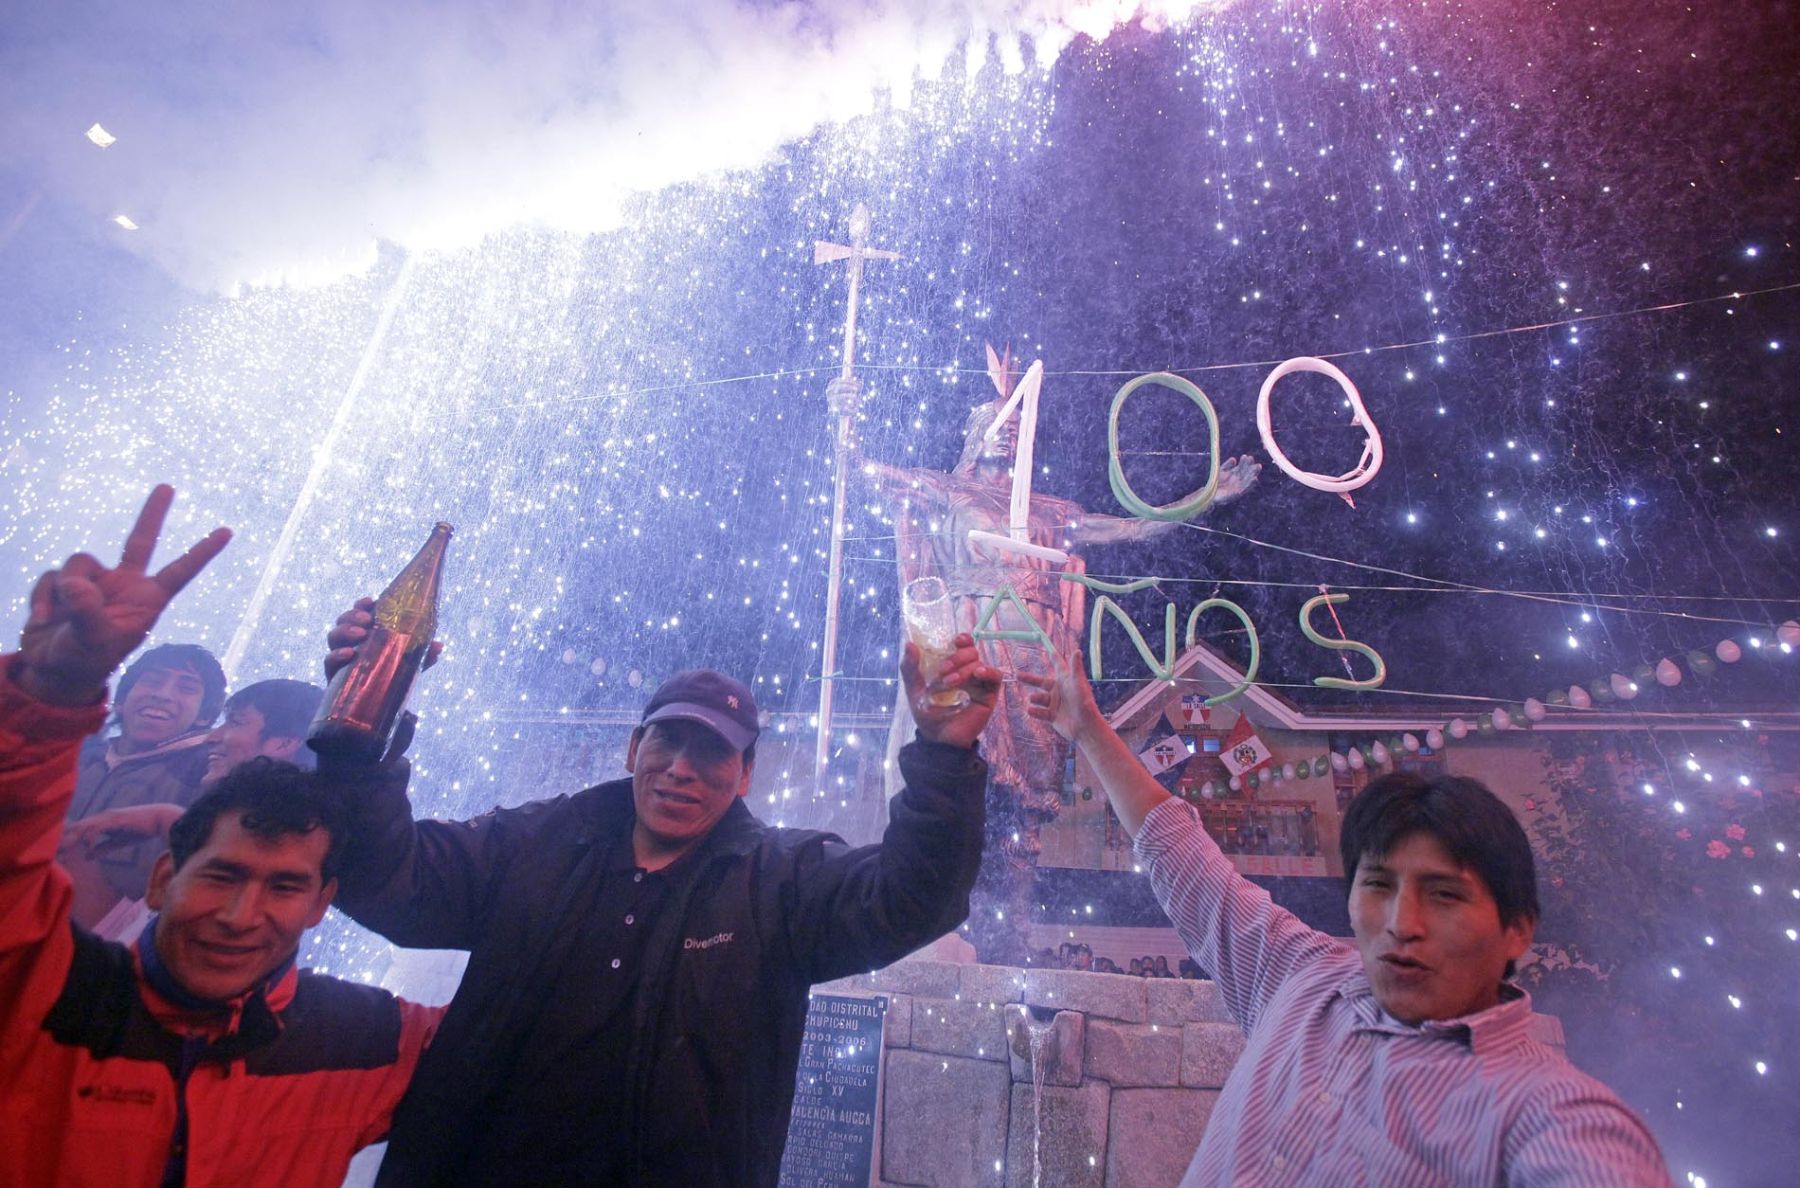 Celebraciones en la plaza Manco Cápac, de Machu Picchu, como parte de los festejos por el centenario de Machu Picchu. Foto: ANDINA/Alberto Orbegoso.